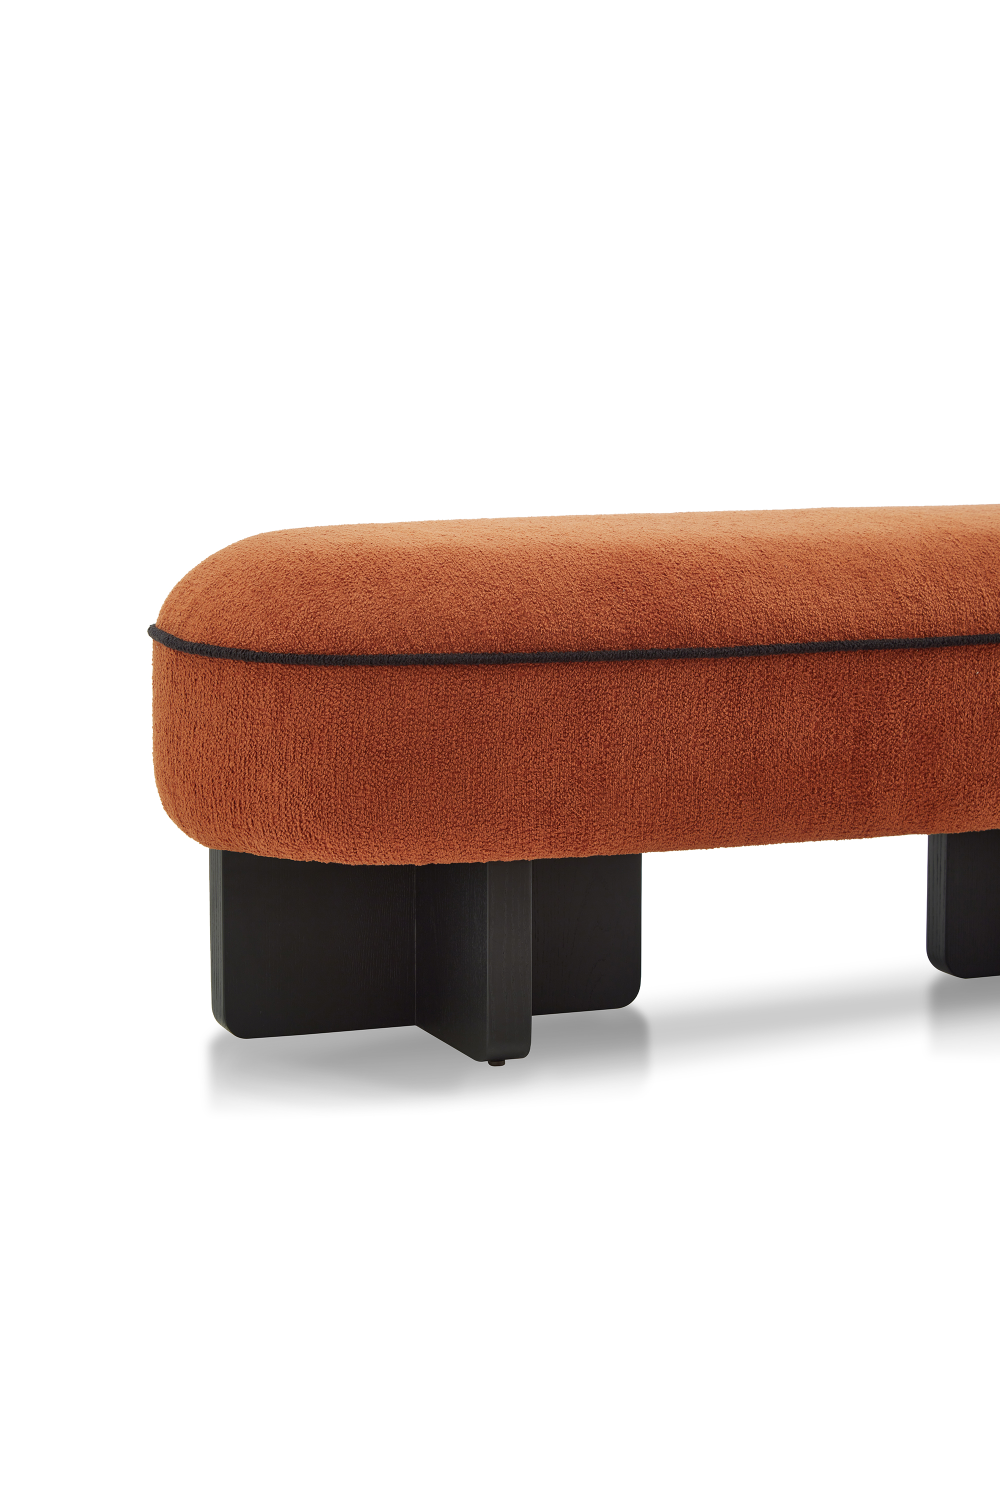 Oval Upholstered Long Bench | Liang & Eimil Lander | Oroa.com